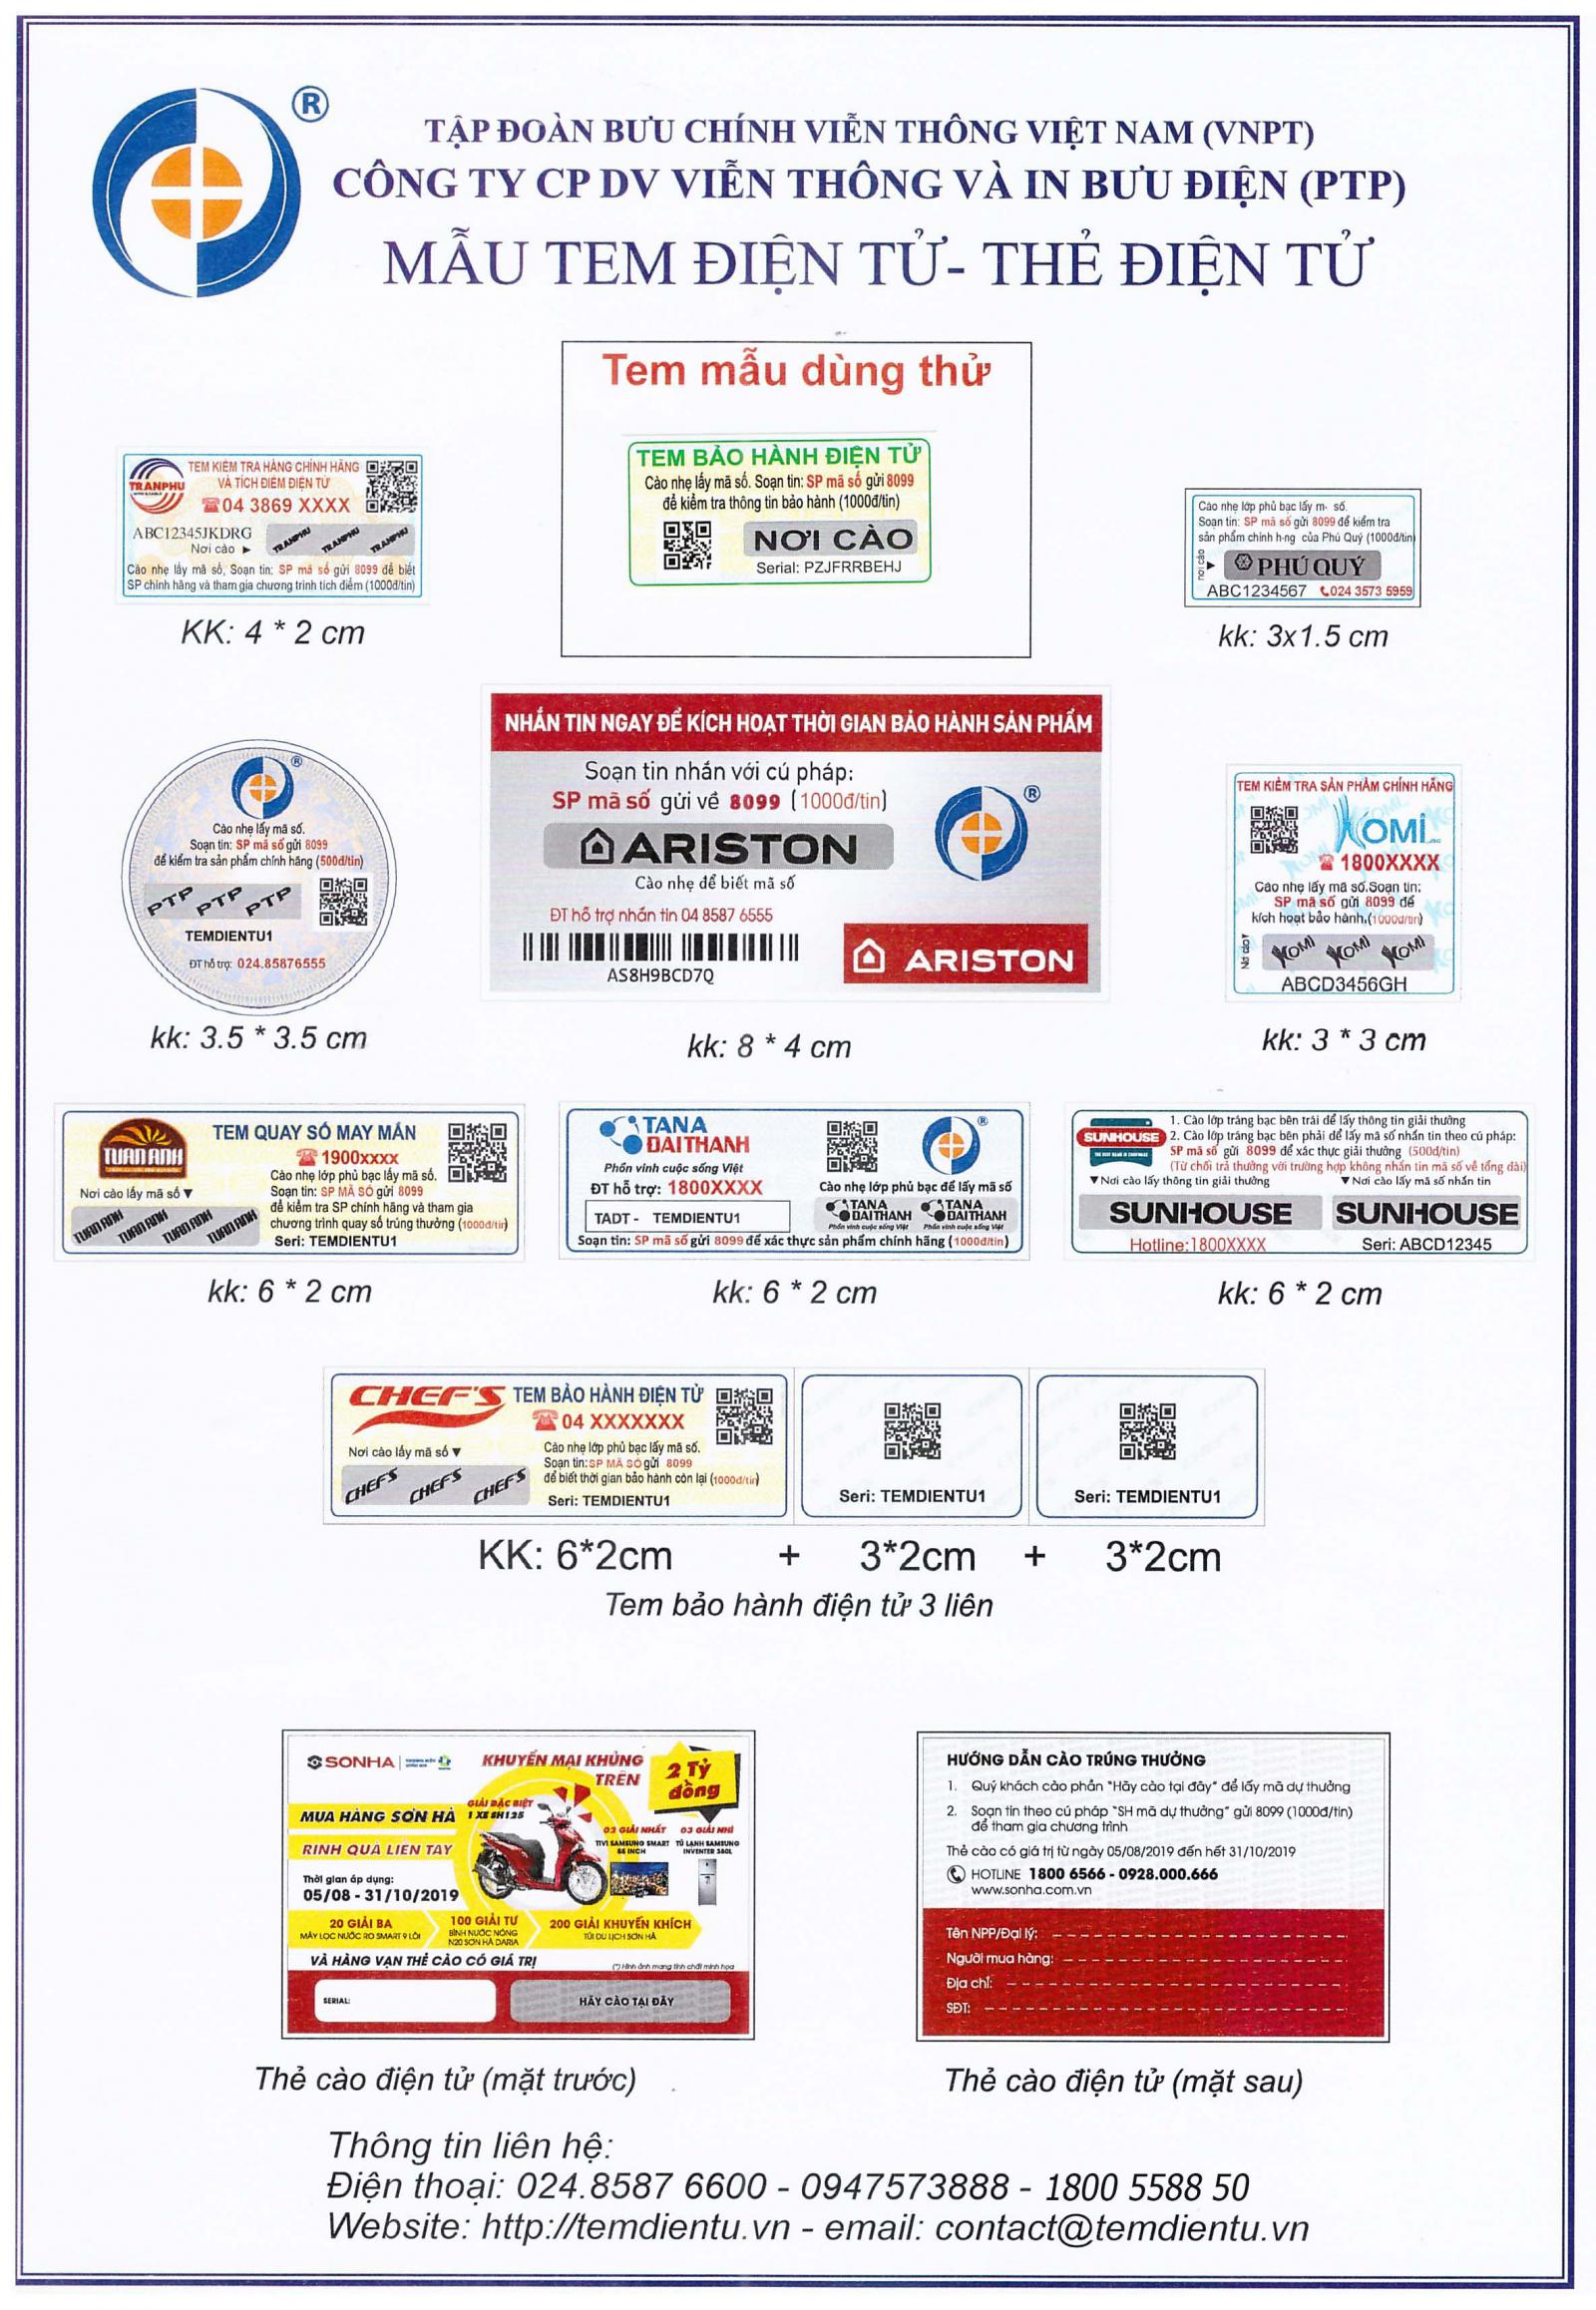 Dịch vụ in tem chống hàng giả uy tín nhất tại Hà Nội, Bắc Ninh, Hải Phòng và các tỉnh Bắc Bộ